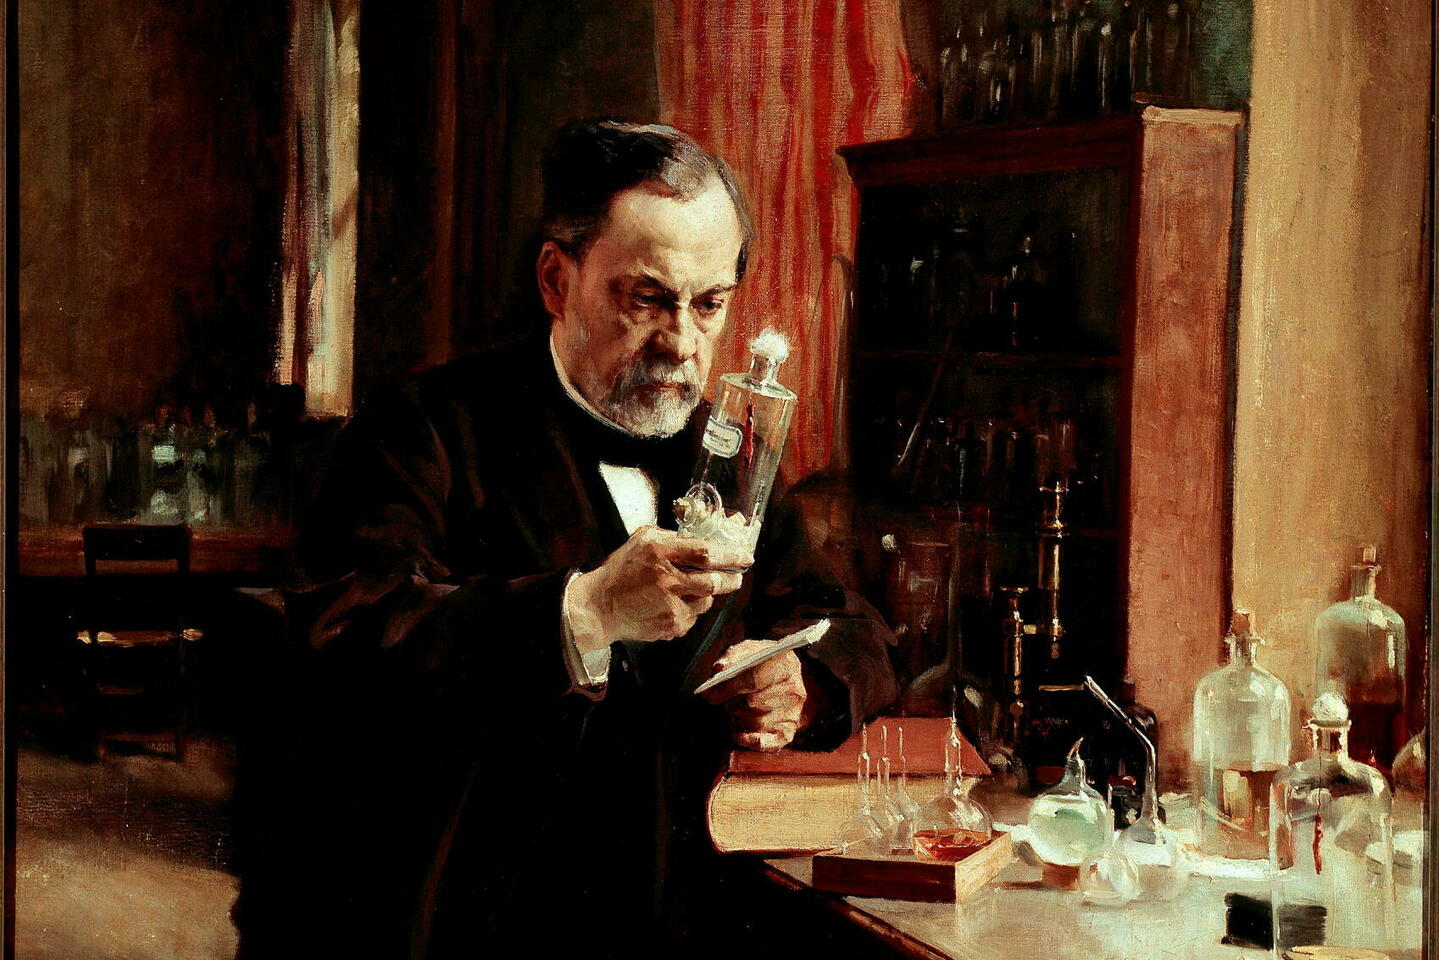 Même l’immense Louis Pasteur n’a pas eu une conduite irréprochable